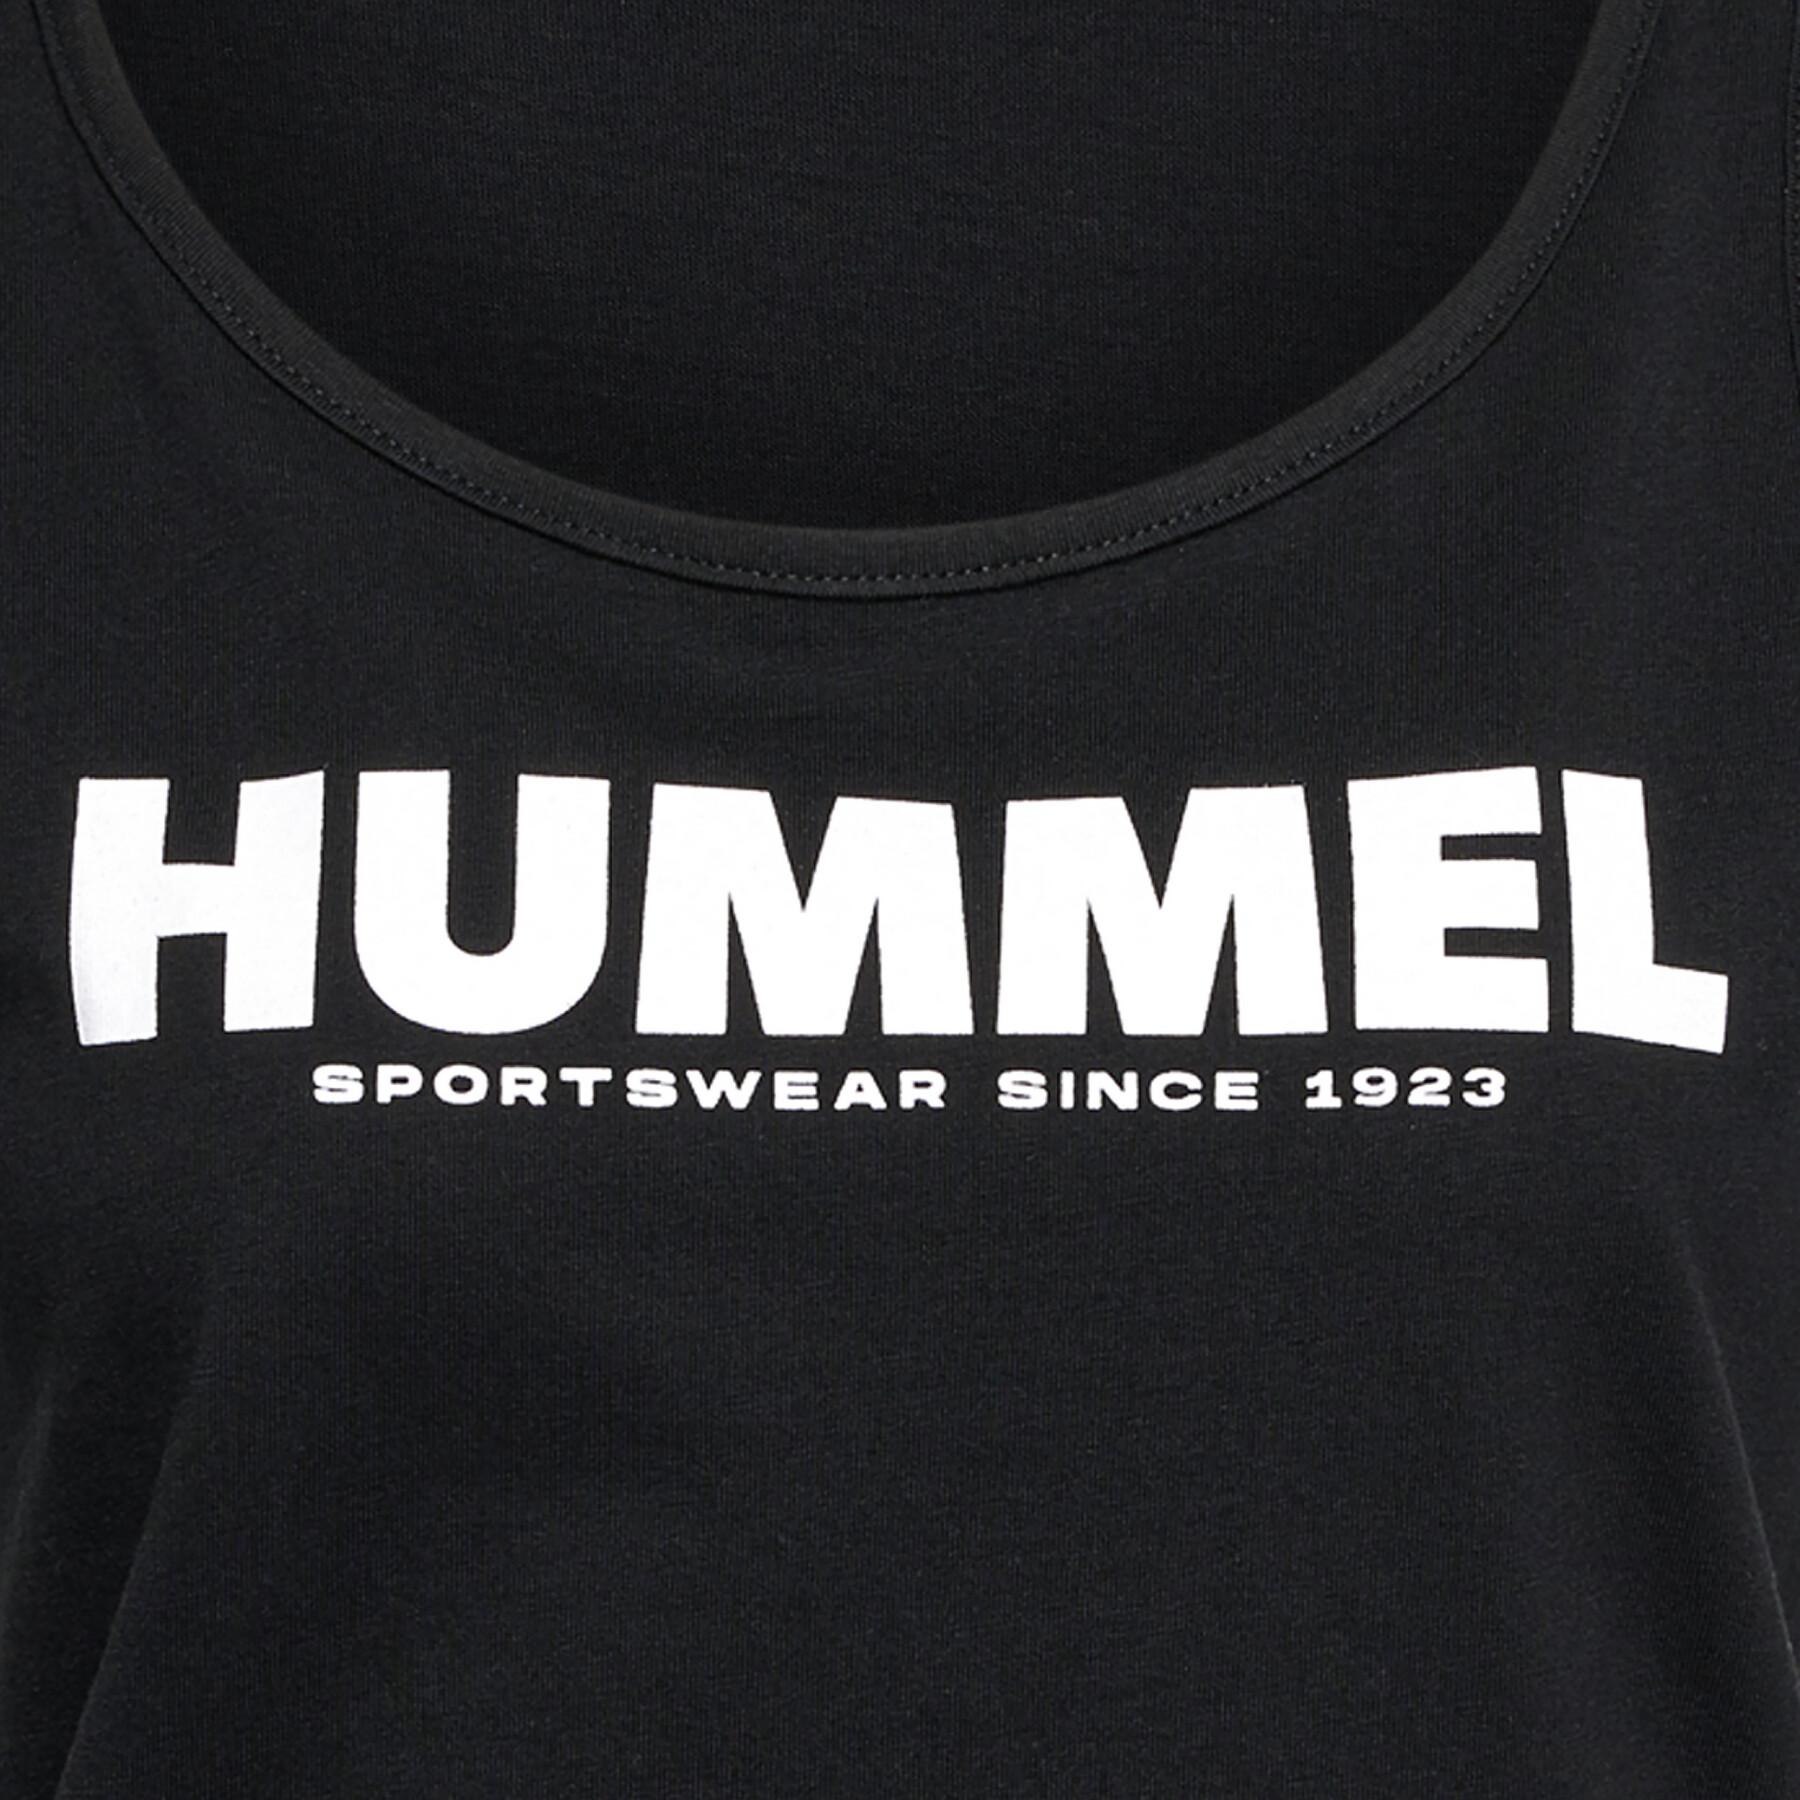 Débardeur femme Hummel Legacy